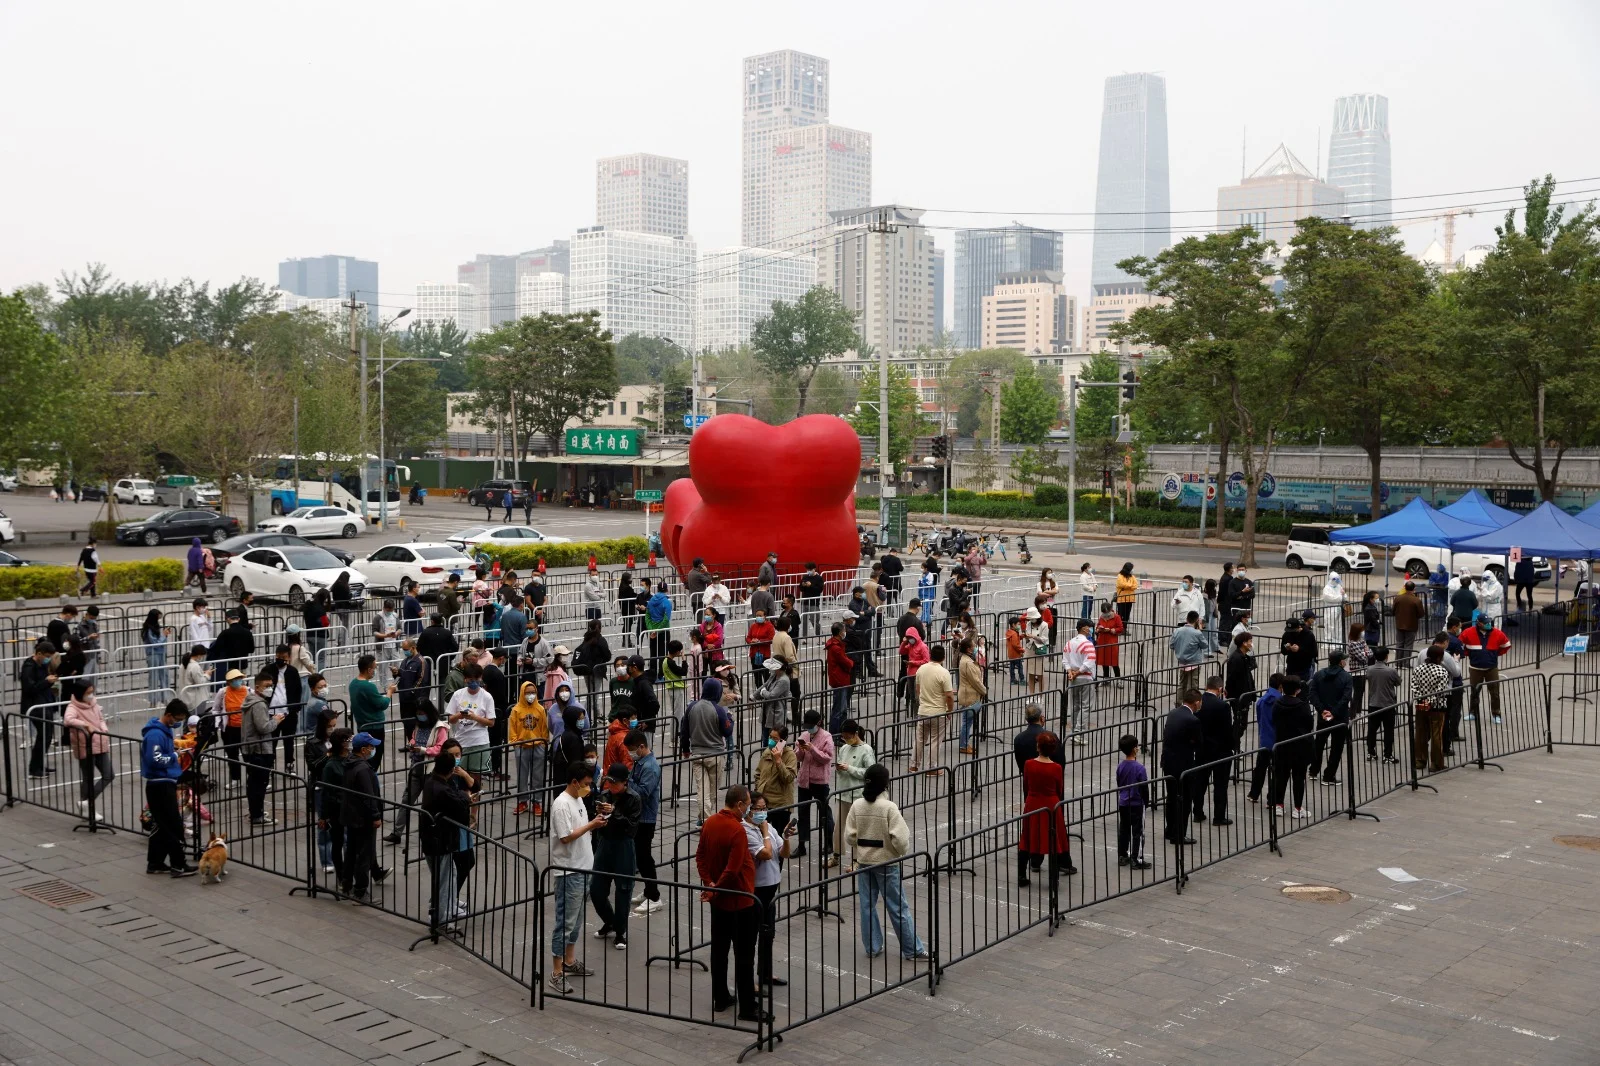 אנשים עומדים בתור לבדיקות קורונה על רקע התפרצות המגפה בבייג'ינג